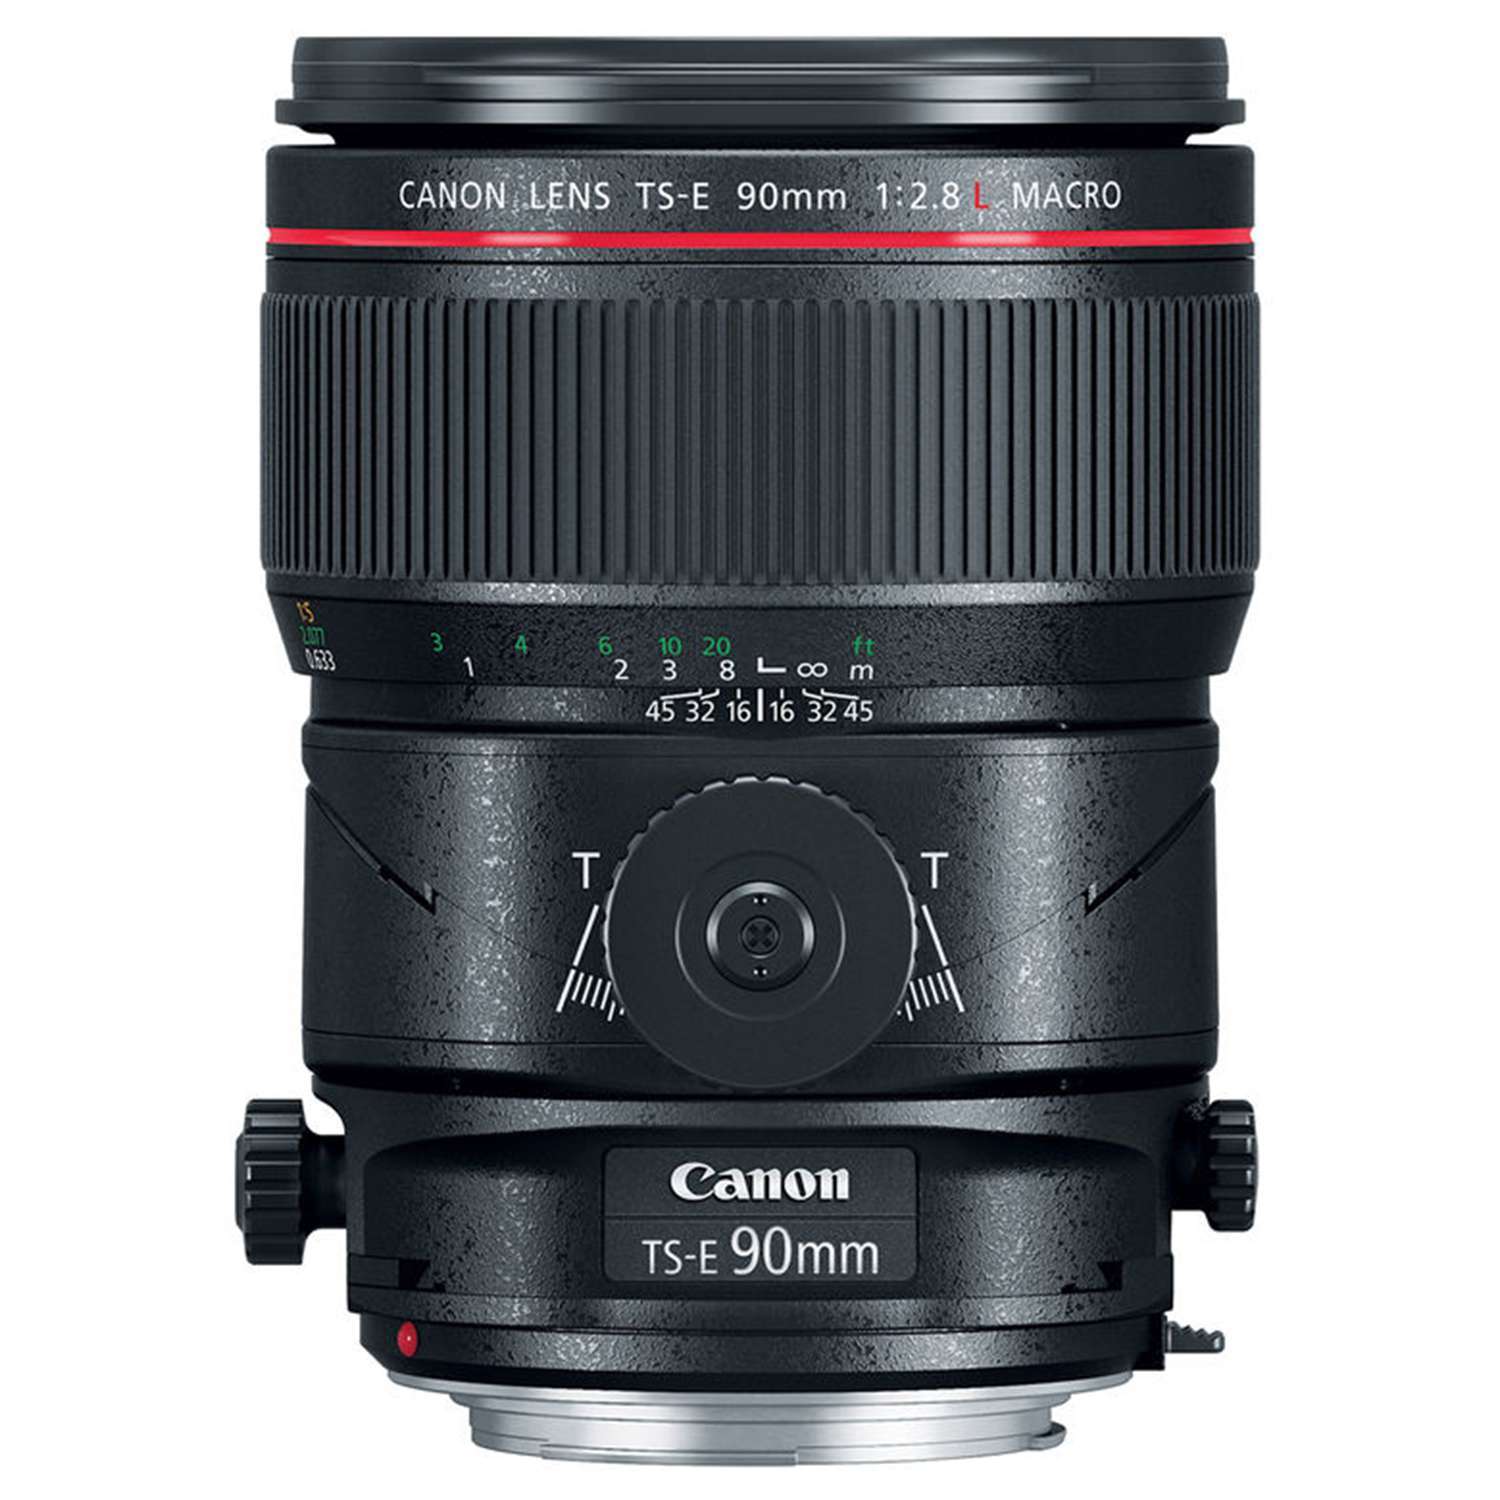 Canon TS-E 90mm f2.8 L Macro